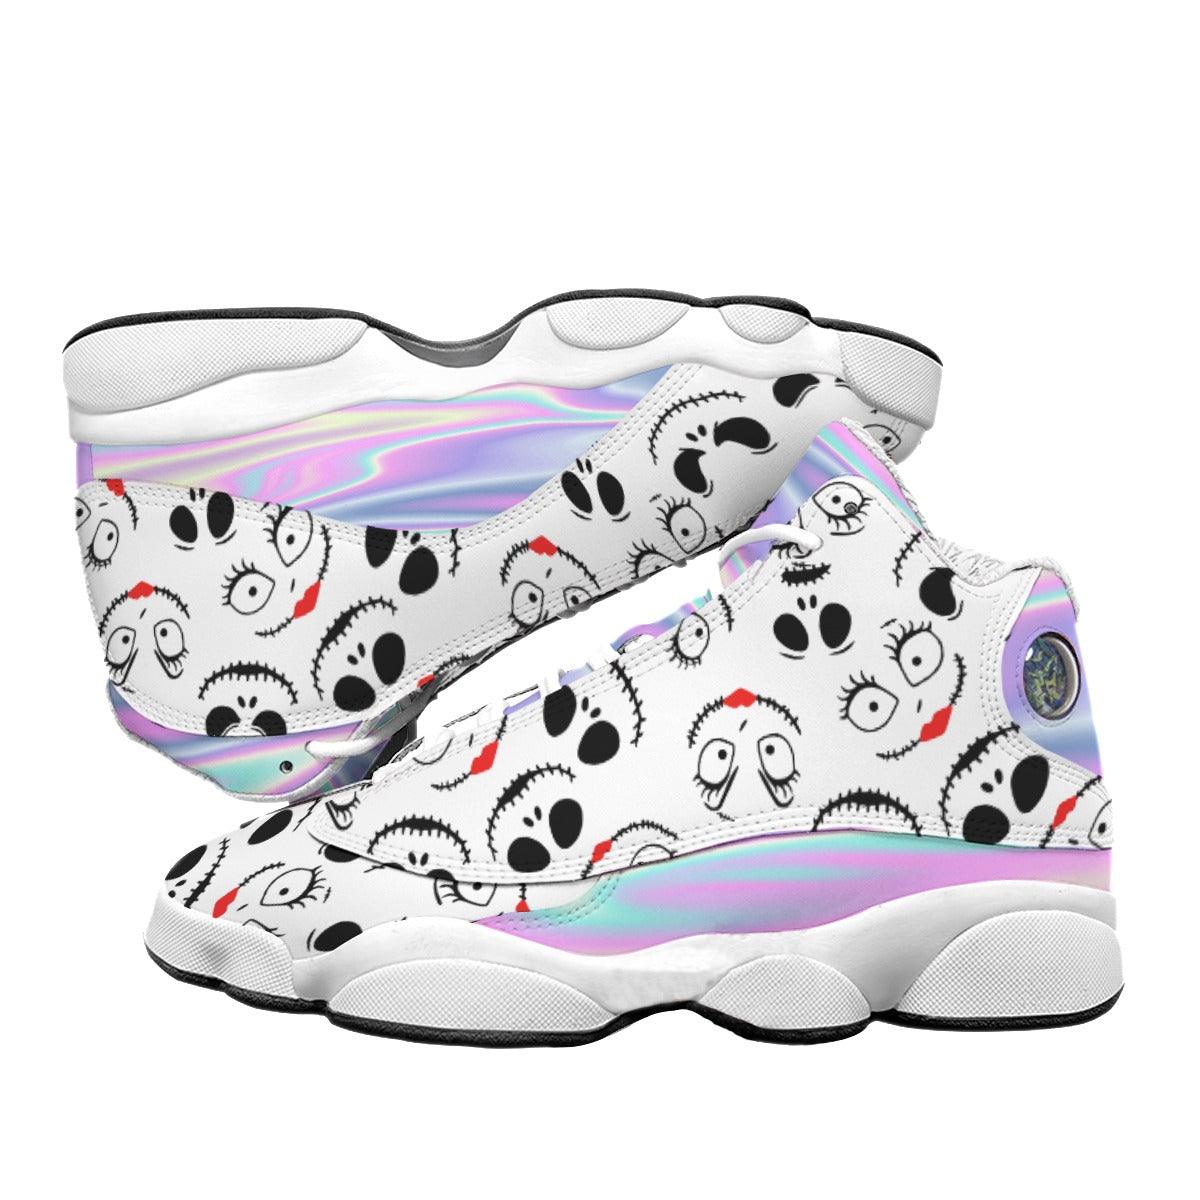 Nightmare Hologram Pattern Men's Curved Basketball Shoes - Wonder Skull